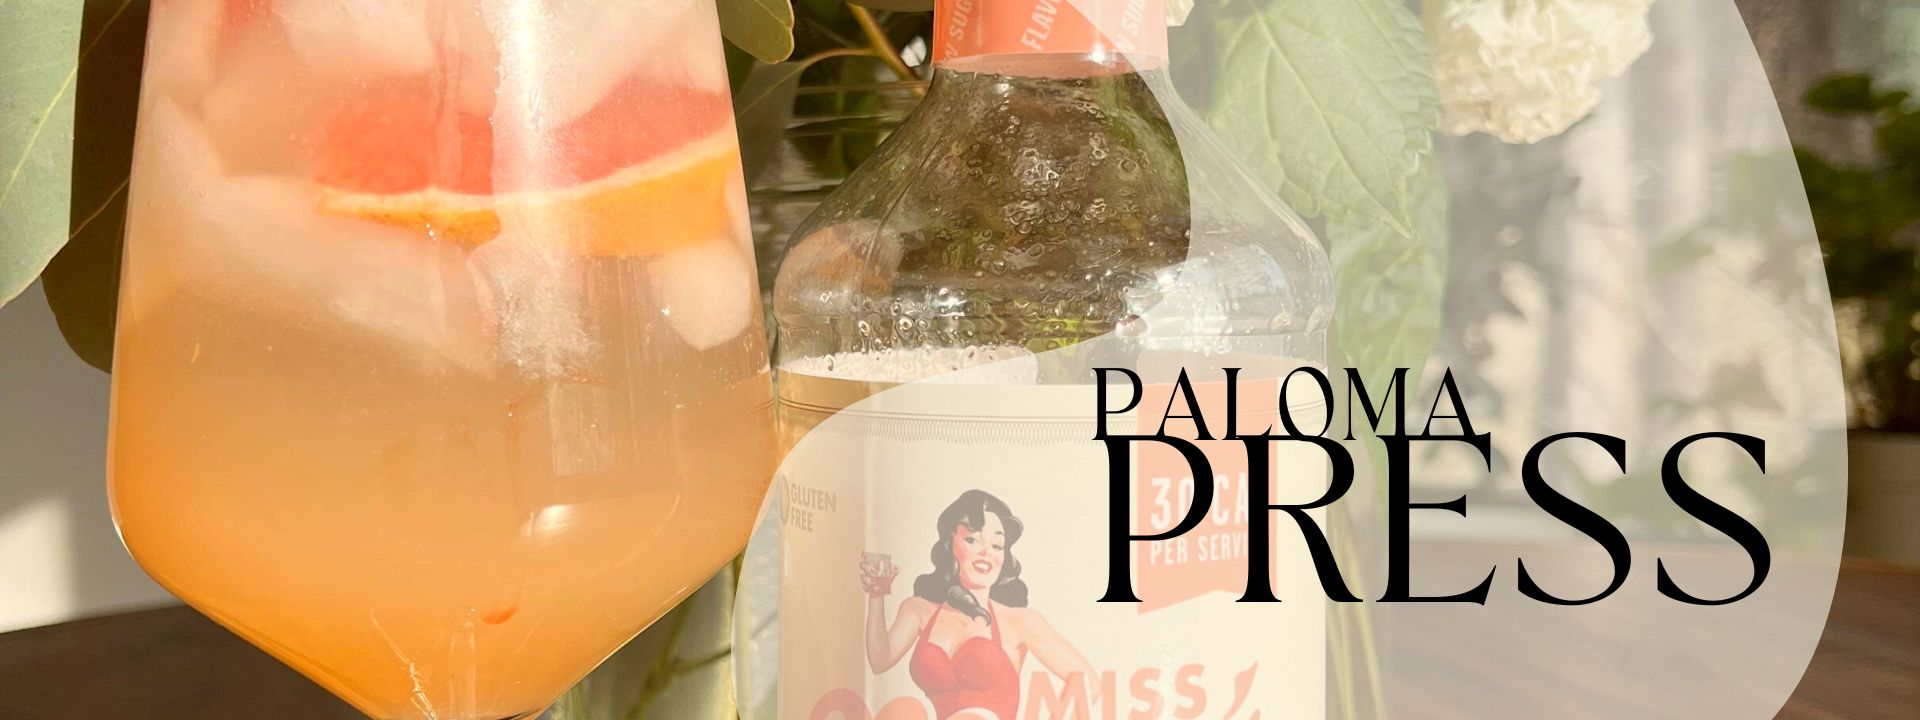 Paloma Press Recipe from Miss Mary's Mix